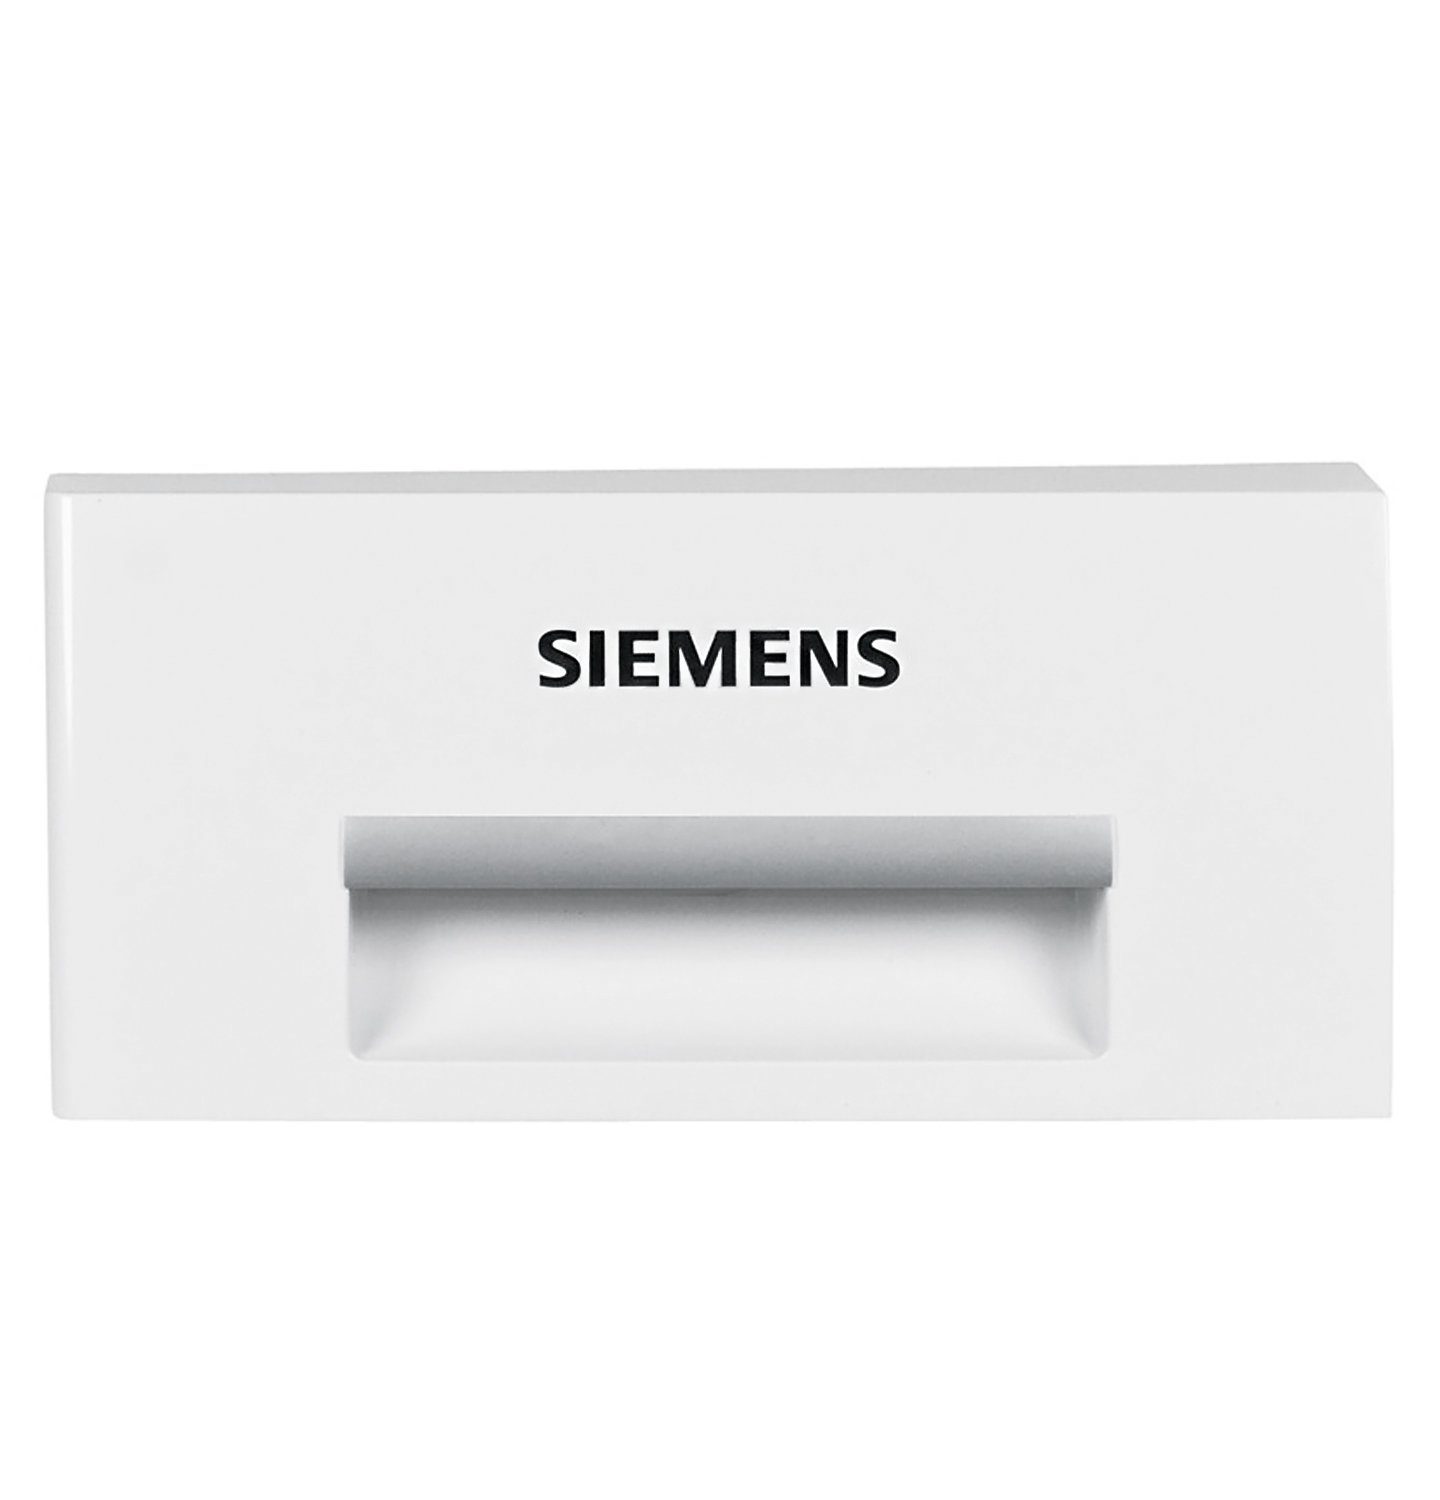 SIEMENS Griff Griffplatte 00652390, 225x105x62mm für Wasserbehälter in Trockner